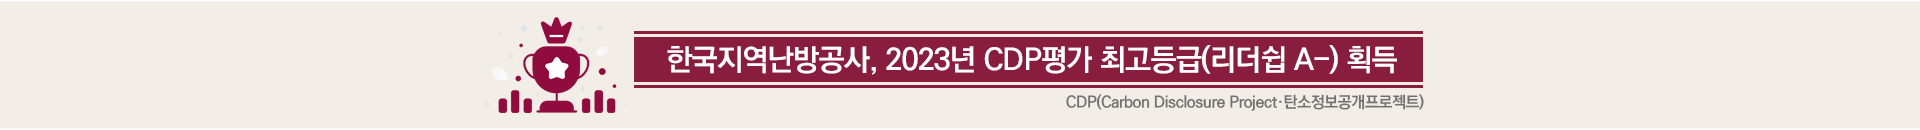 한국지역난방공사 2023년 CDP 평가에서 공공기관 중 최고등급 A- 등급 획득